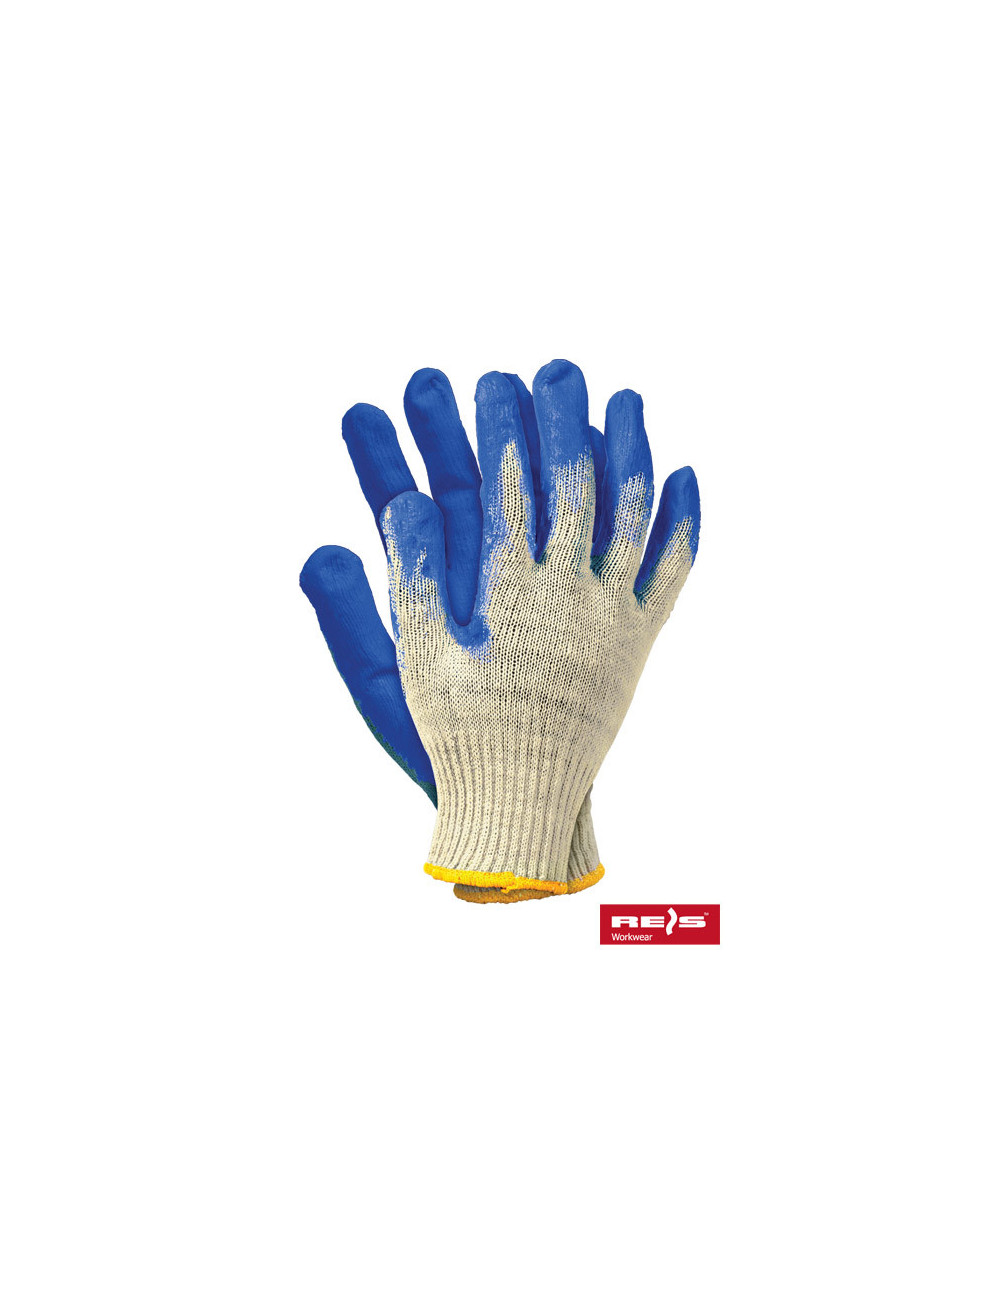 Protective gloves ruxl wn white-blue Reis